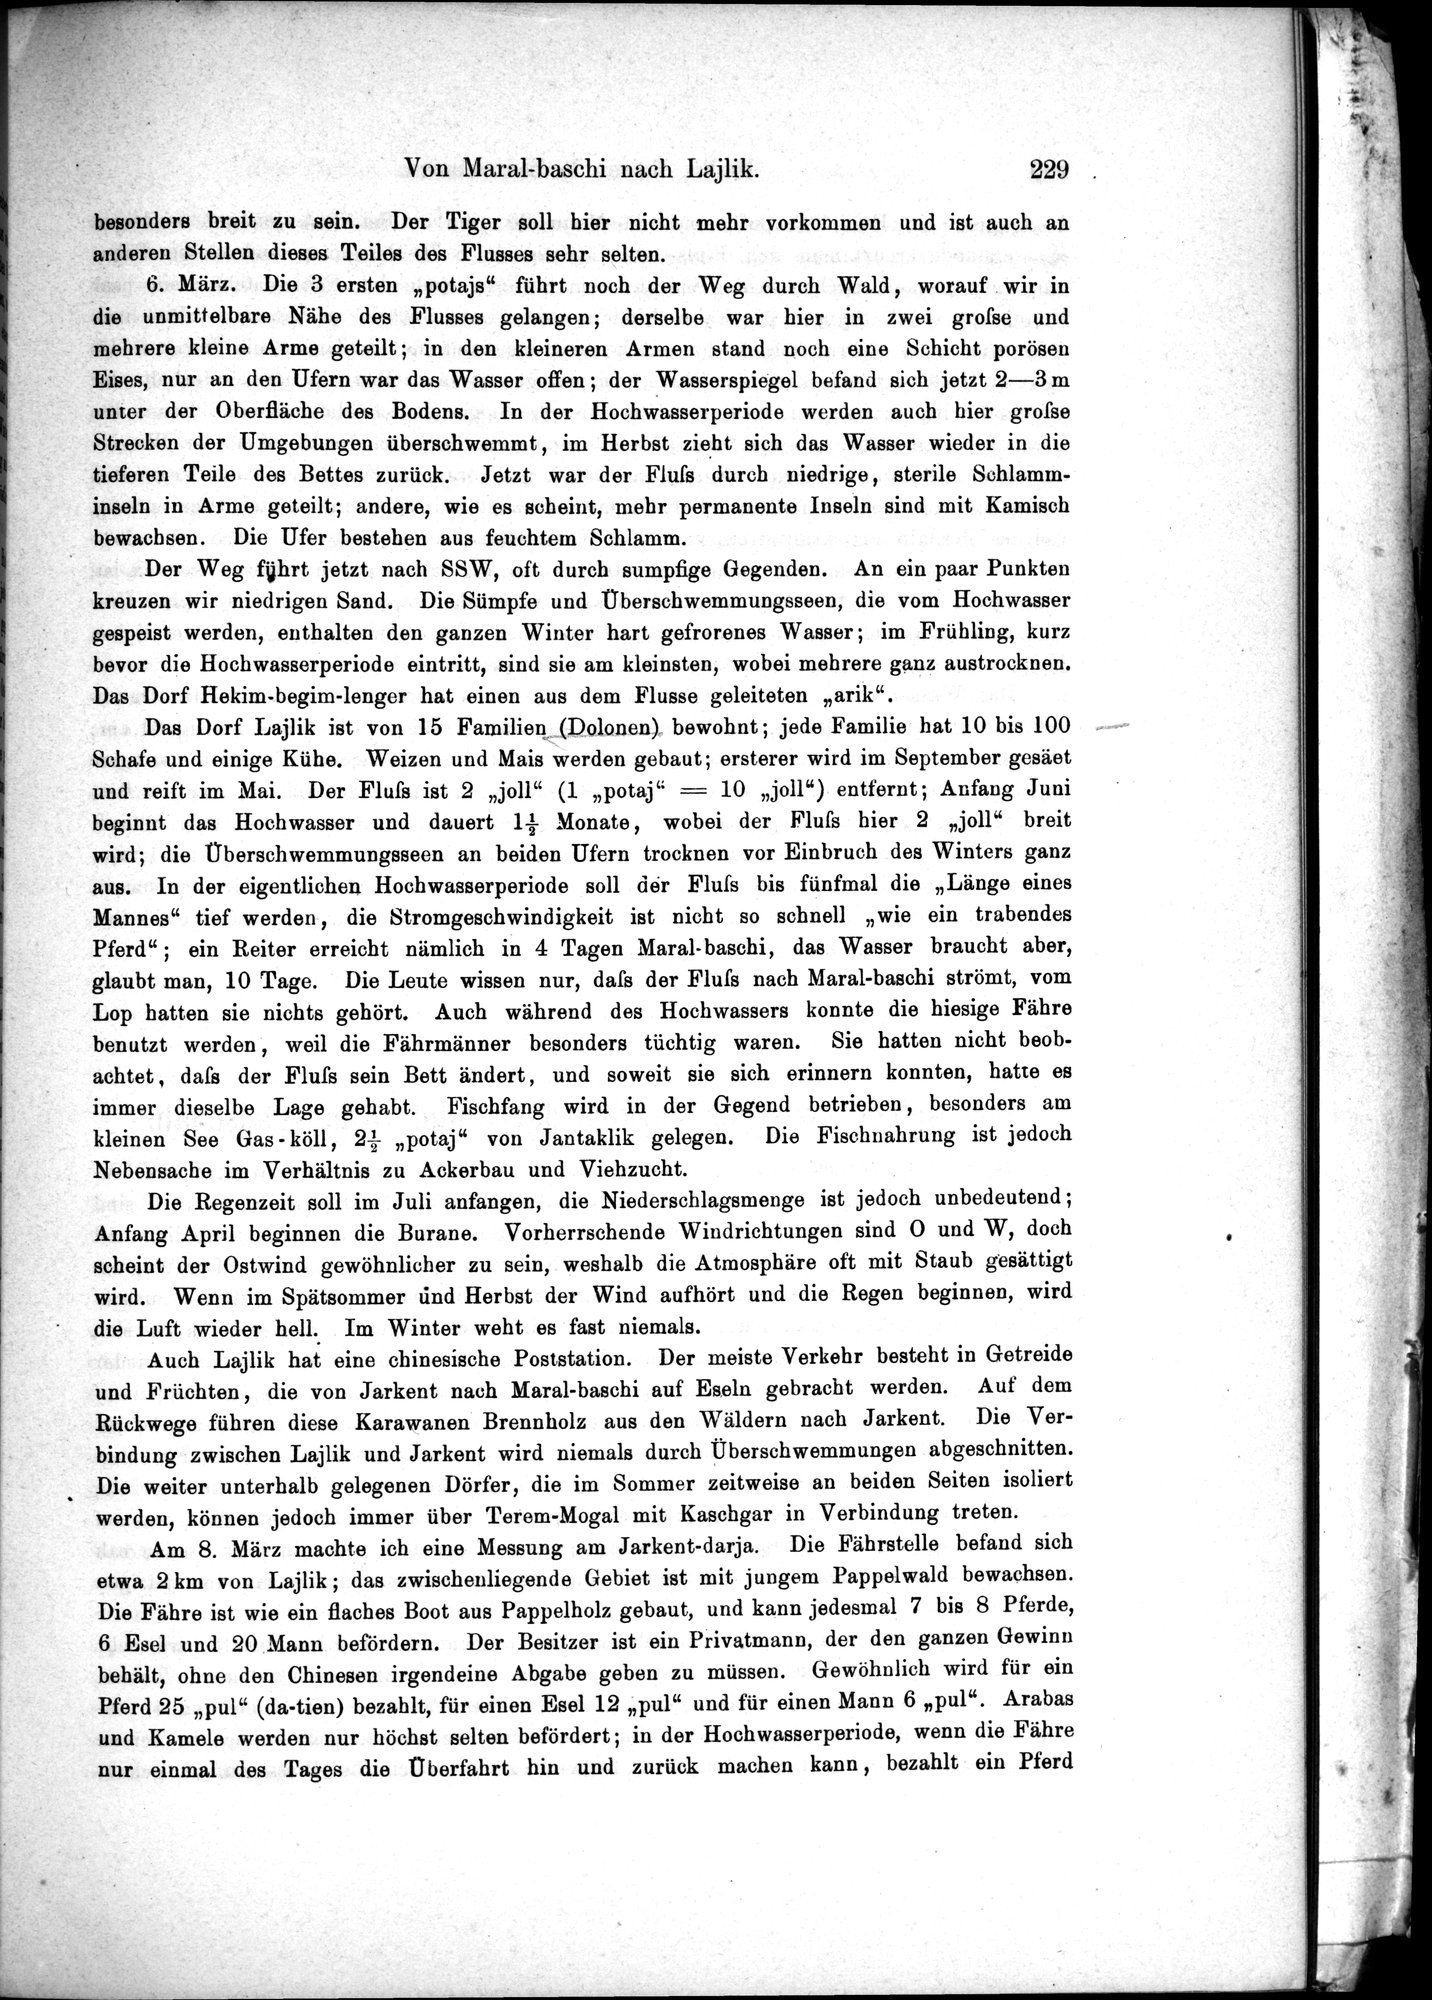 Die Geographische-Wissenschaftlichen Ergebnisse meiner Reisen in Zentralasien, 1894-1897 : vol.1 / Page 241 (Grayscale High Resolution Image)